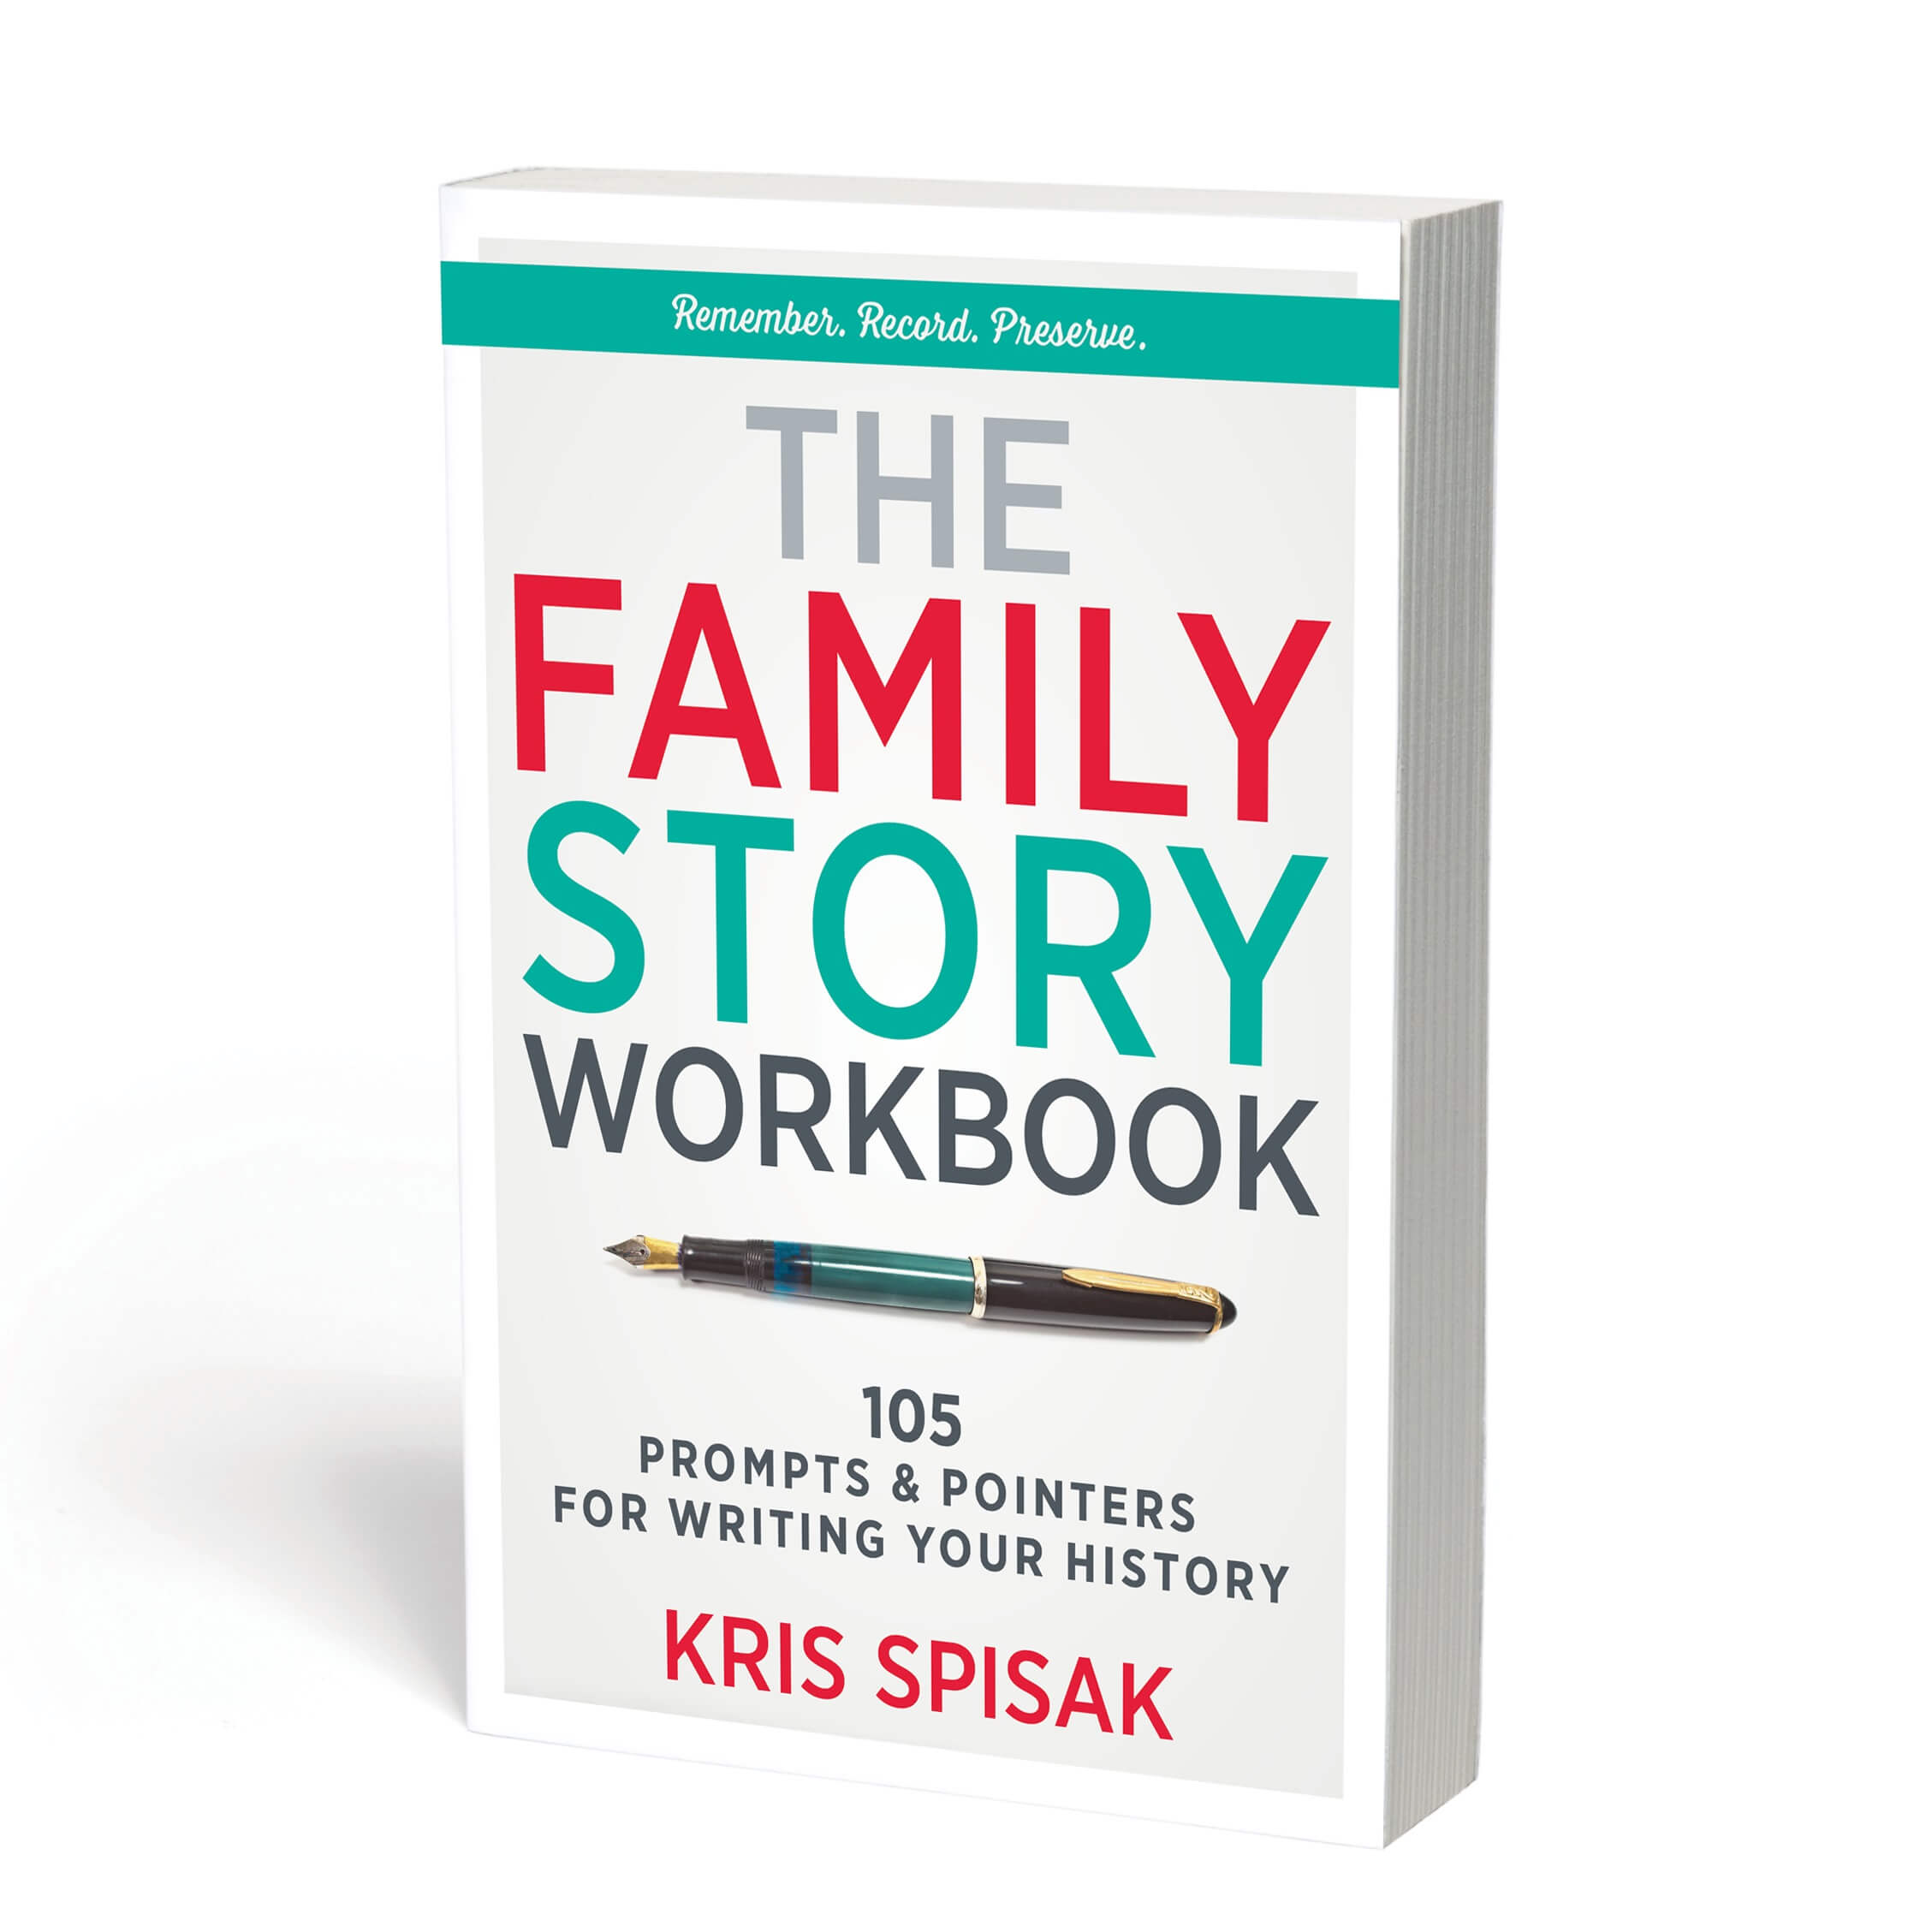 The Family Story Workbook by Kris Spisak